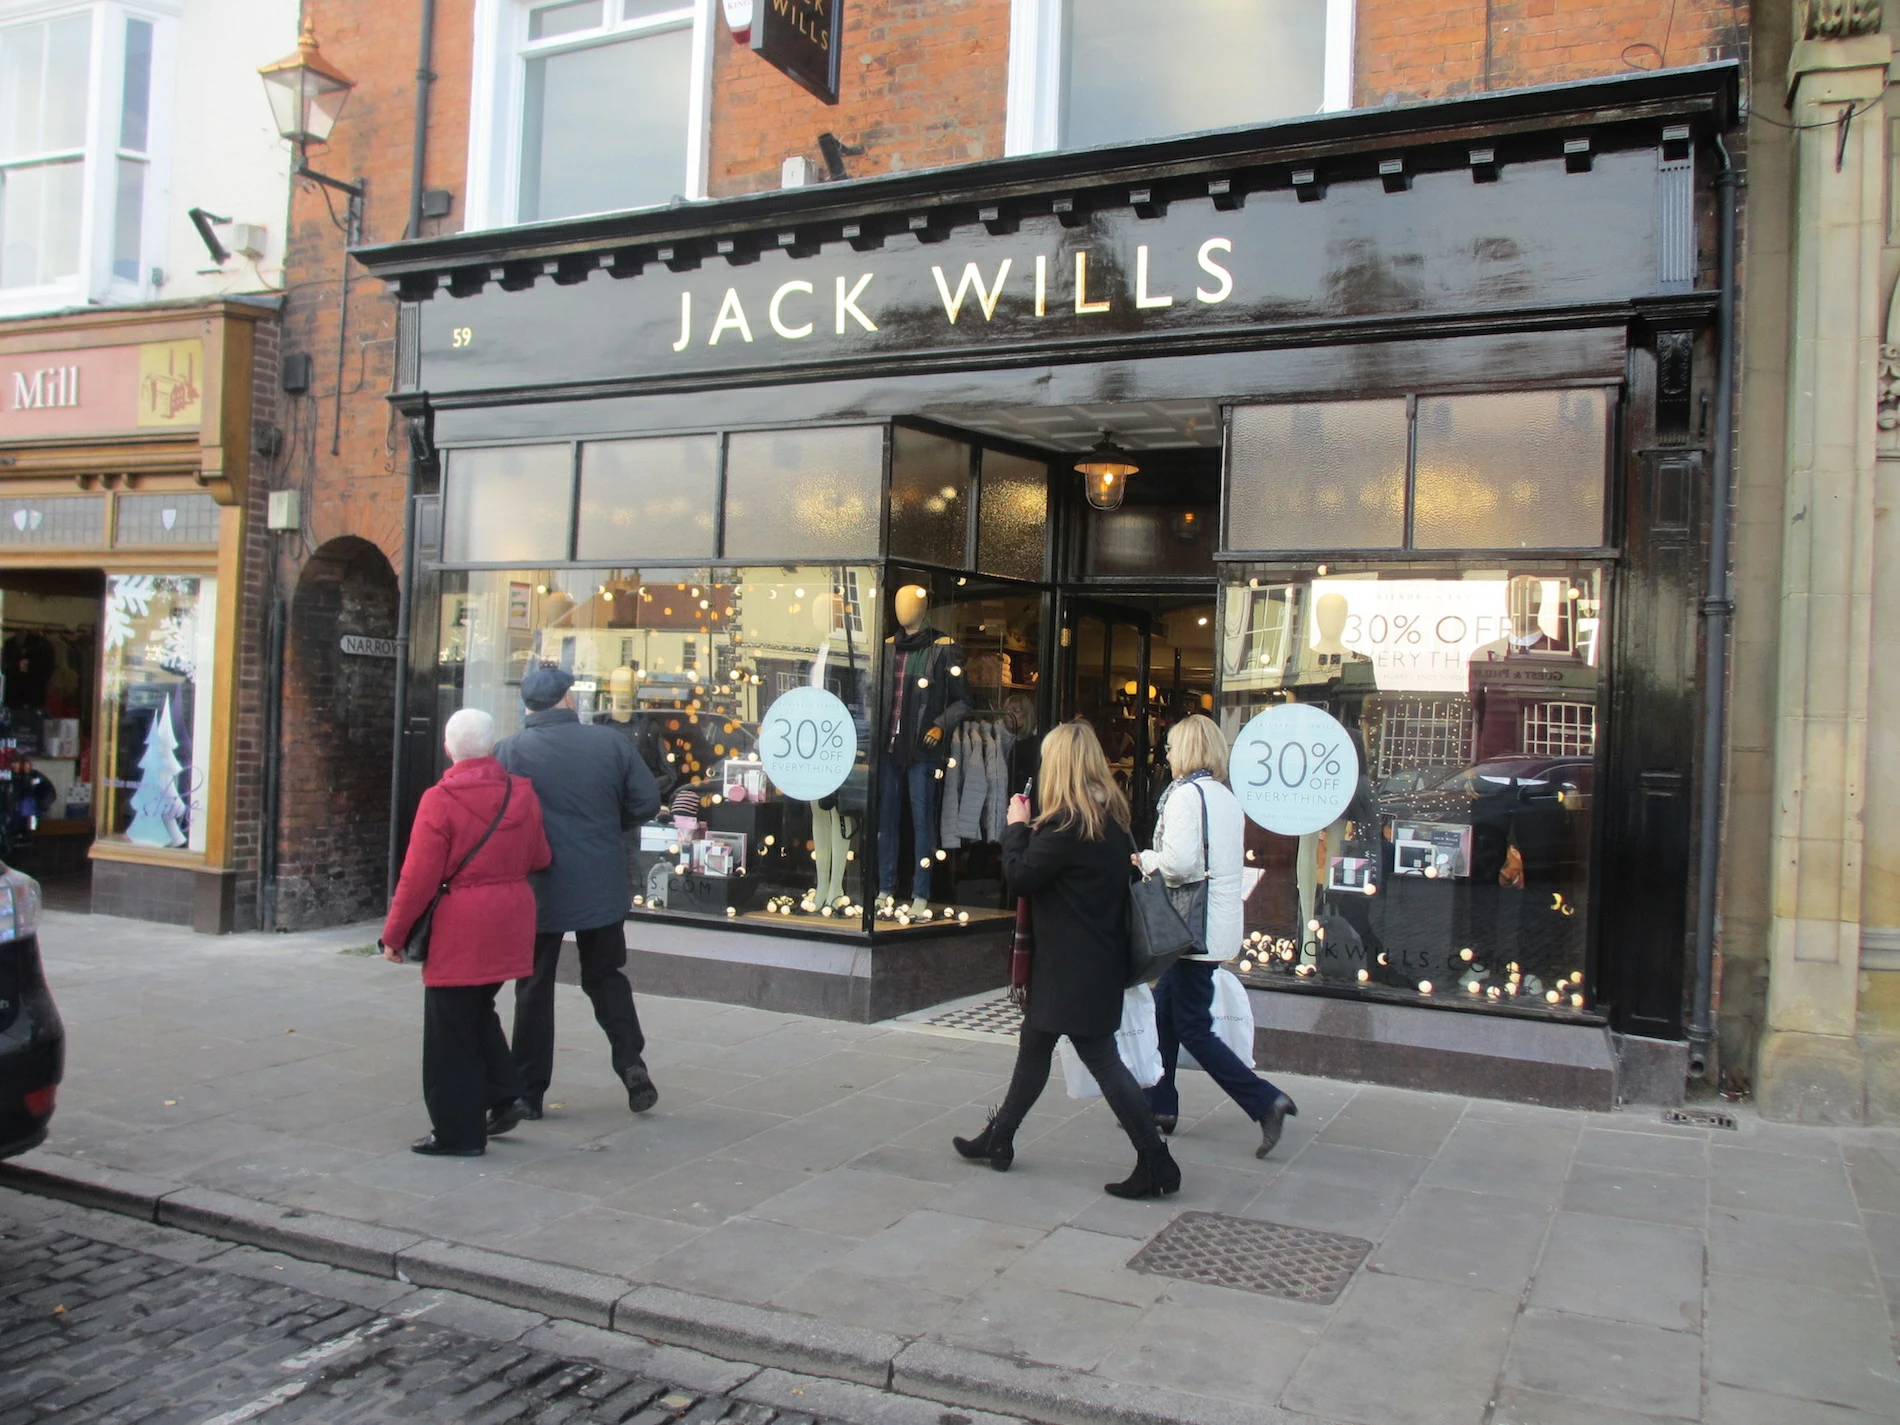 Jack Wills in Beverley, Yorkshire.